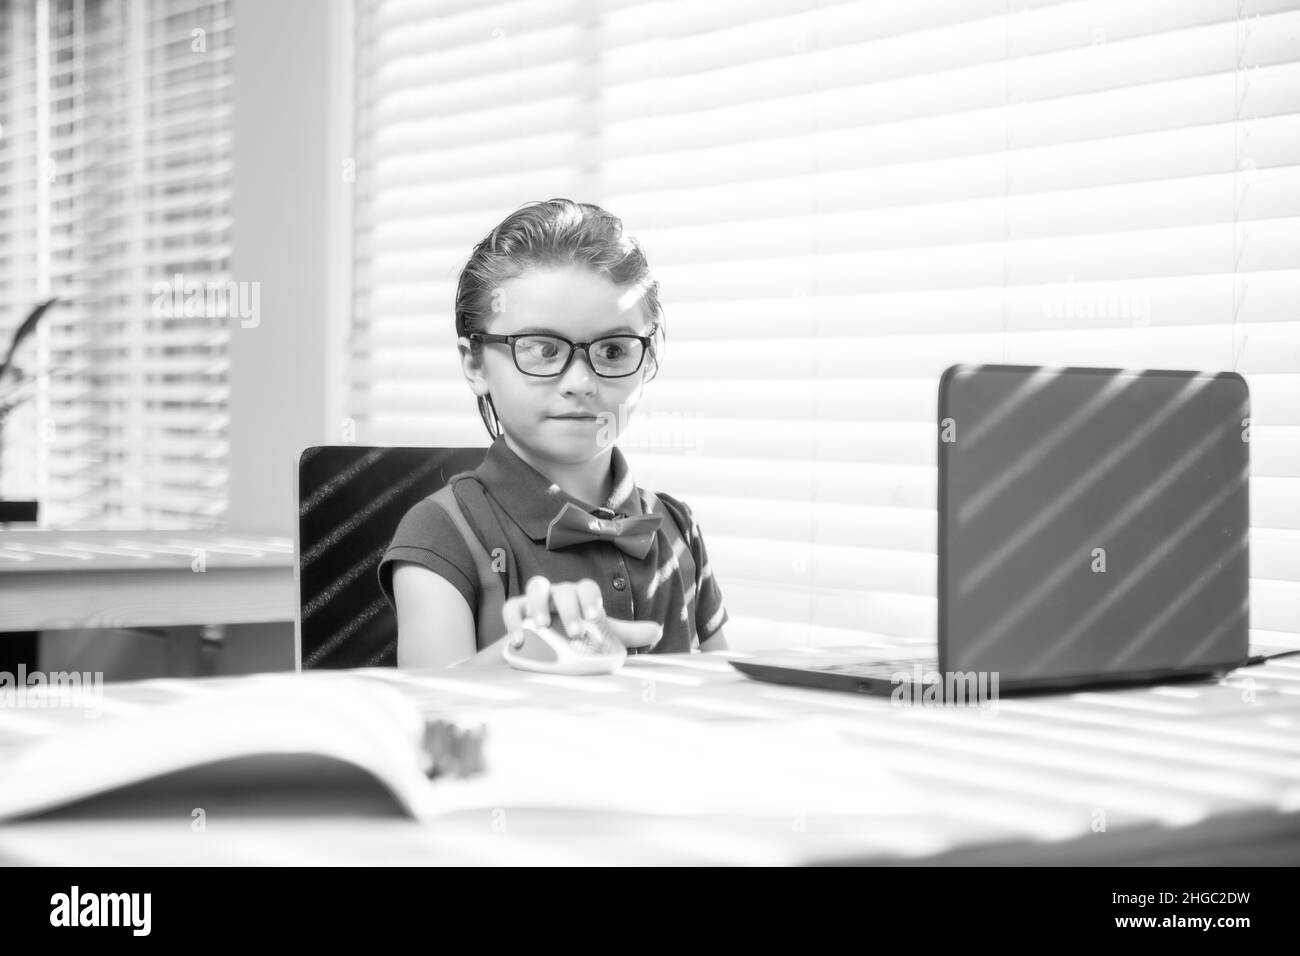 Première journée à l'école. Petit enfant mignon utilisant un ordinateur portable, étudiant l'ordinateur. Banque D'Images